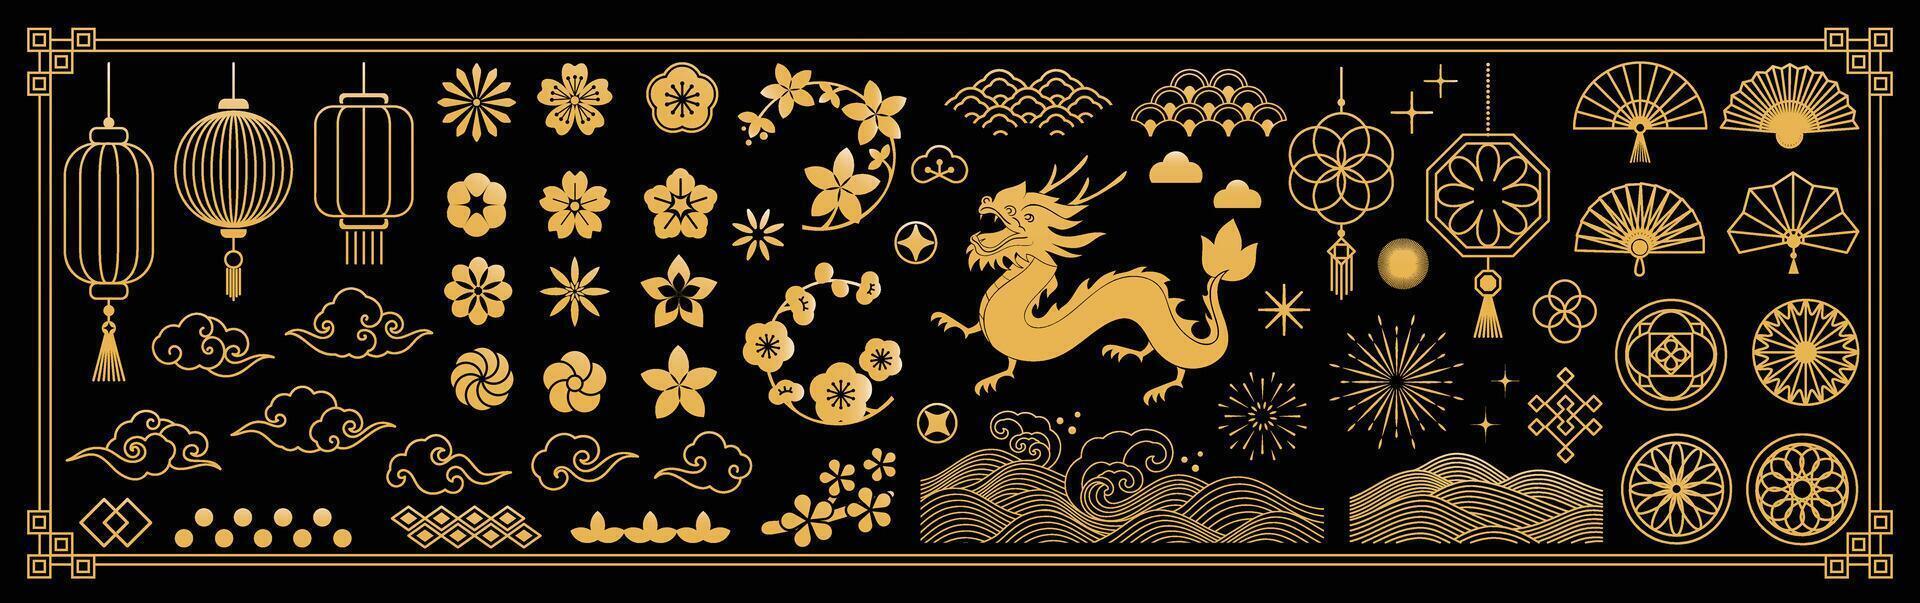 kinesisk ny år ikoner vektor uppsättning. körsbär blomma blomma, lykta, drake, hav Vinka, moln isolerat ikon av asiatisk lunar ny år Semester dekoration vektor. orientalisk kultur tradition illustration.